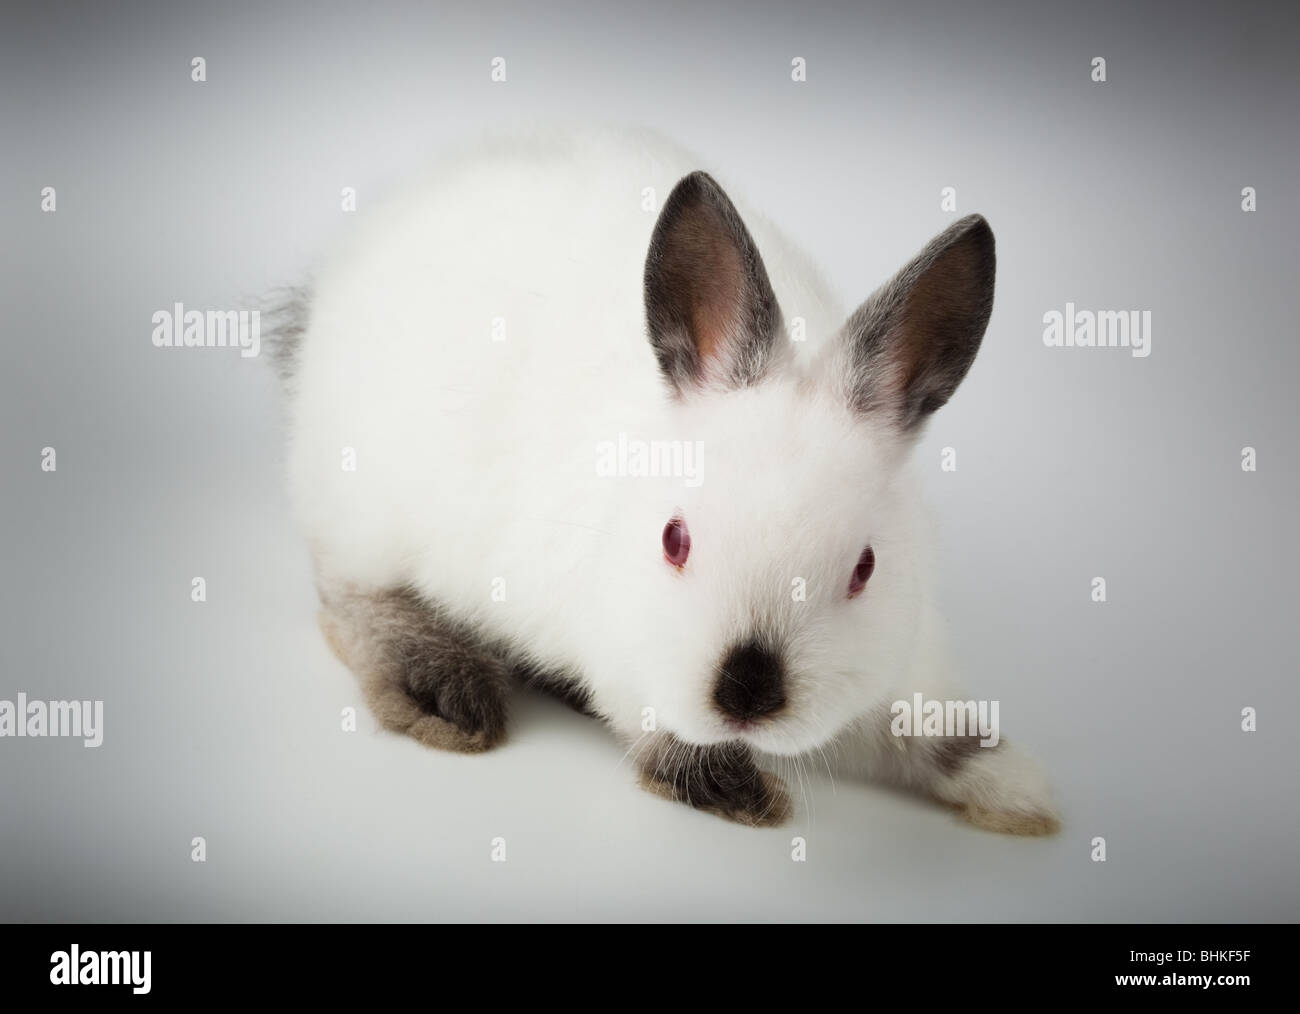 Niza conejo blanco. Es recortar sobre un fondo blanco. Foto de stock